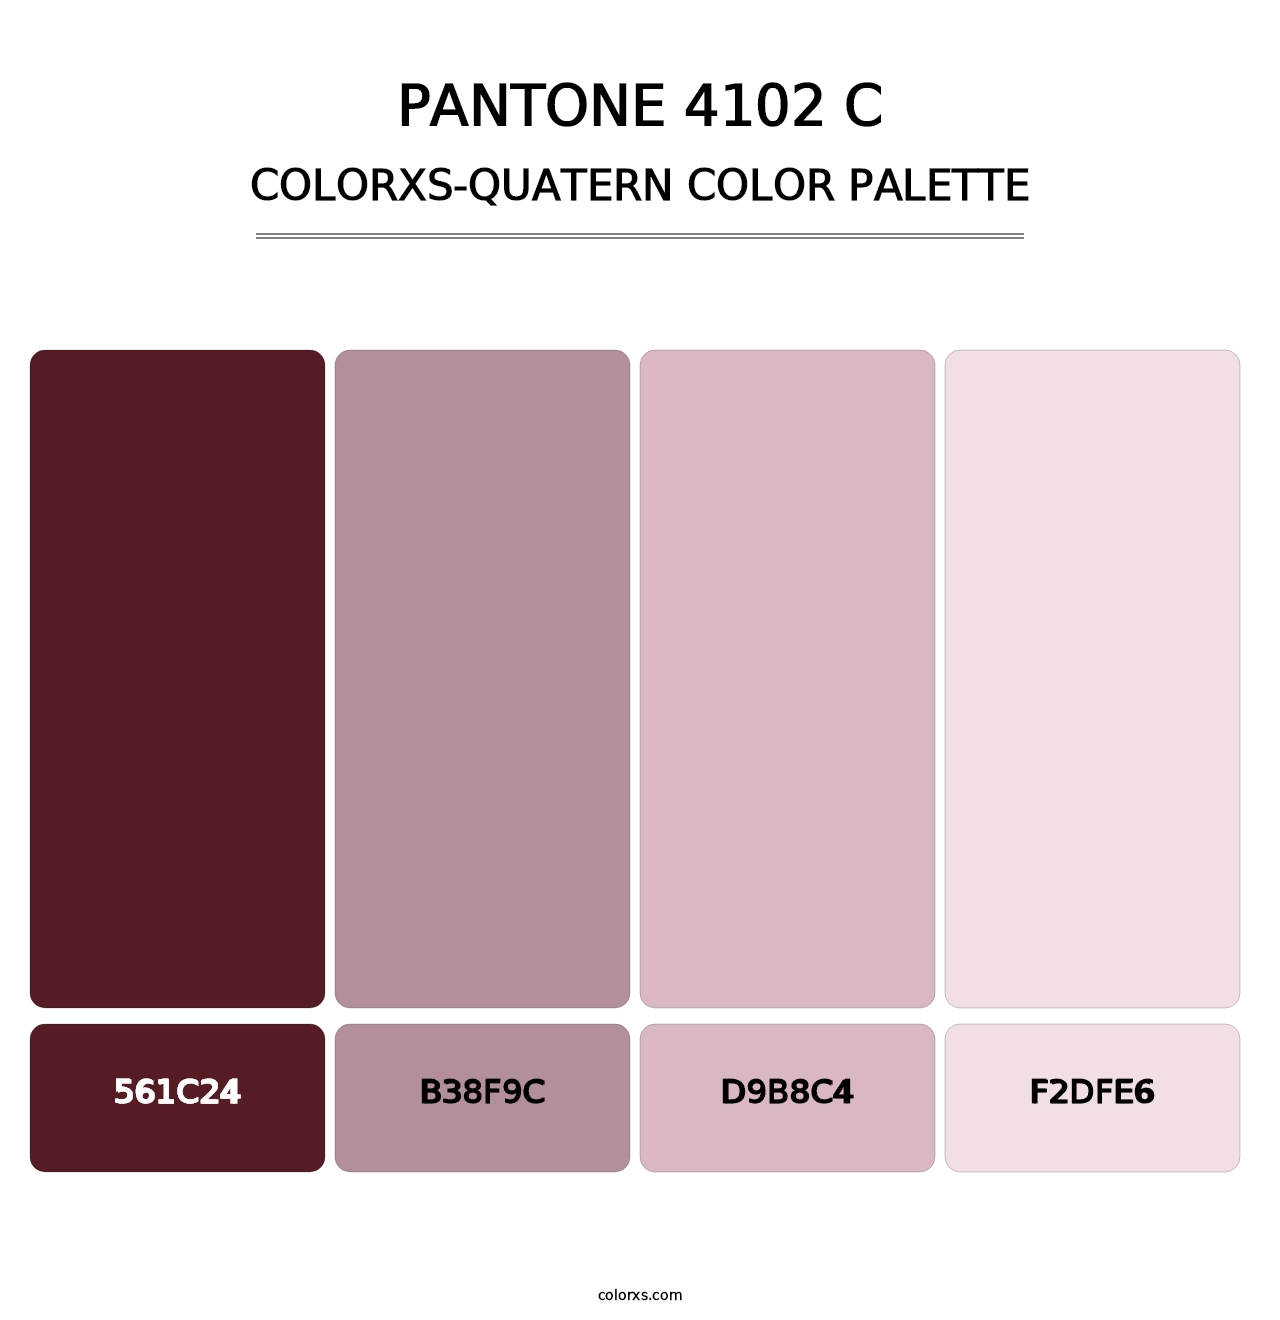 PANTONE 4102 C - Colorxs Quatern Palette